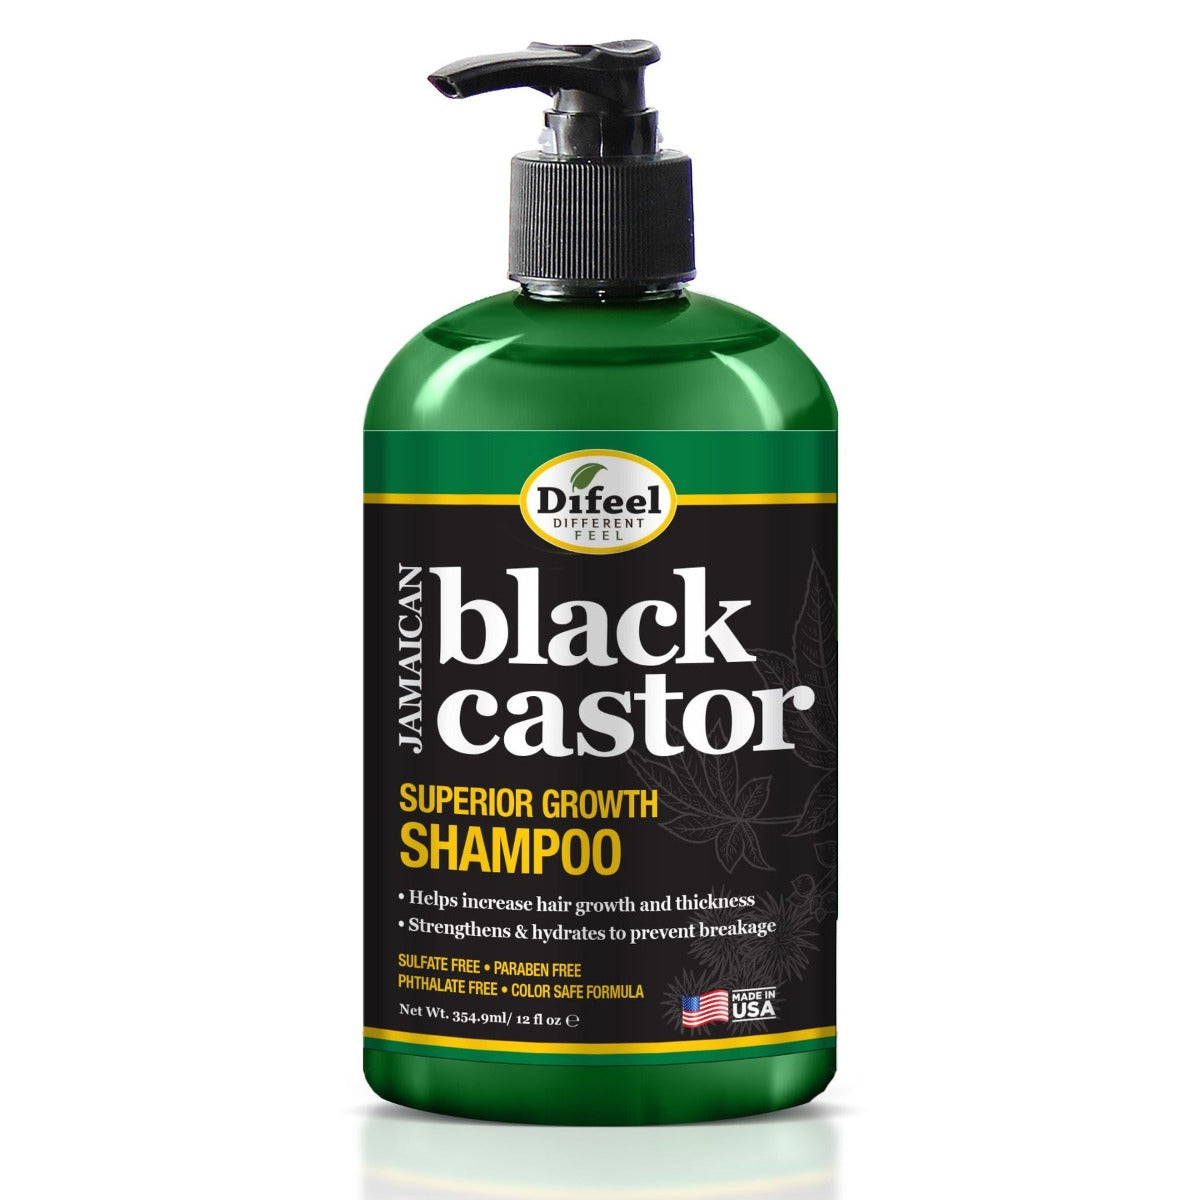 Difeel Jamaican Black Castor Superior Growth Shampoo 354ml